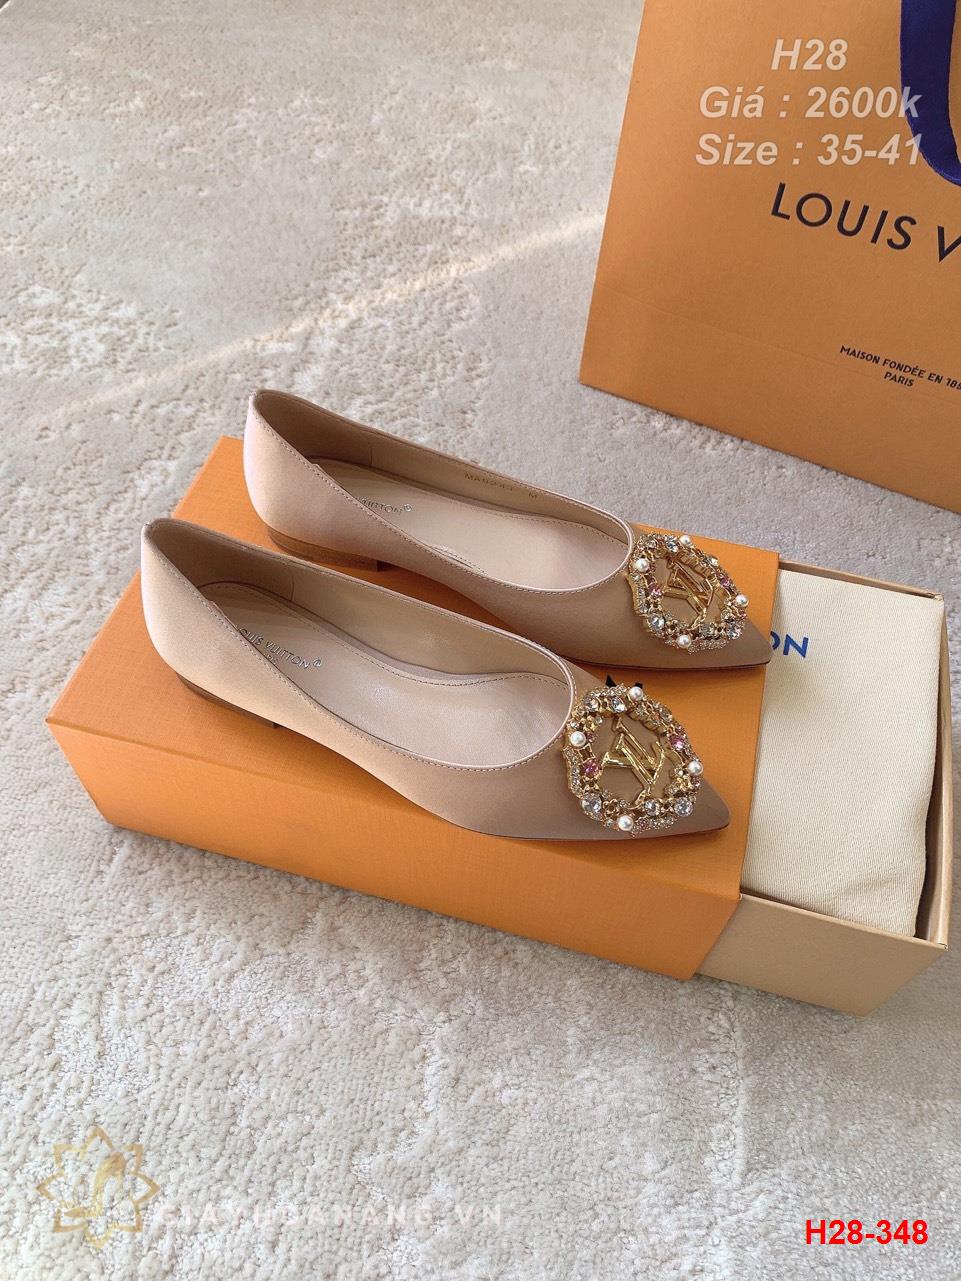 H28-348 Louis Vuitton giày bệt siêu cấp